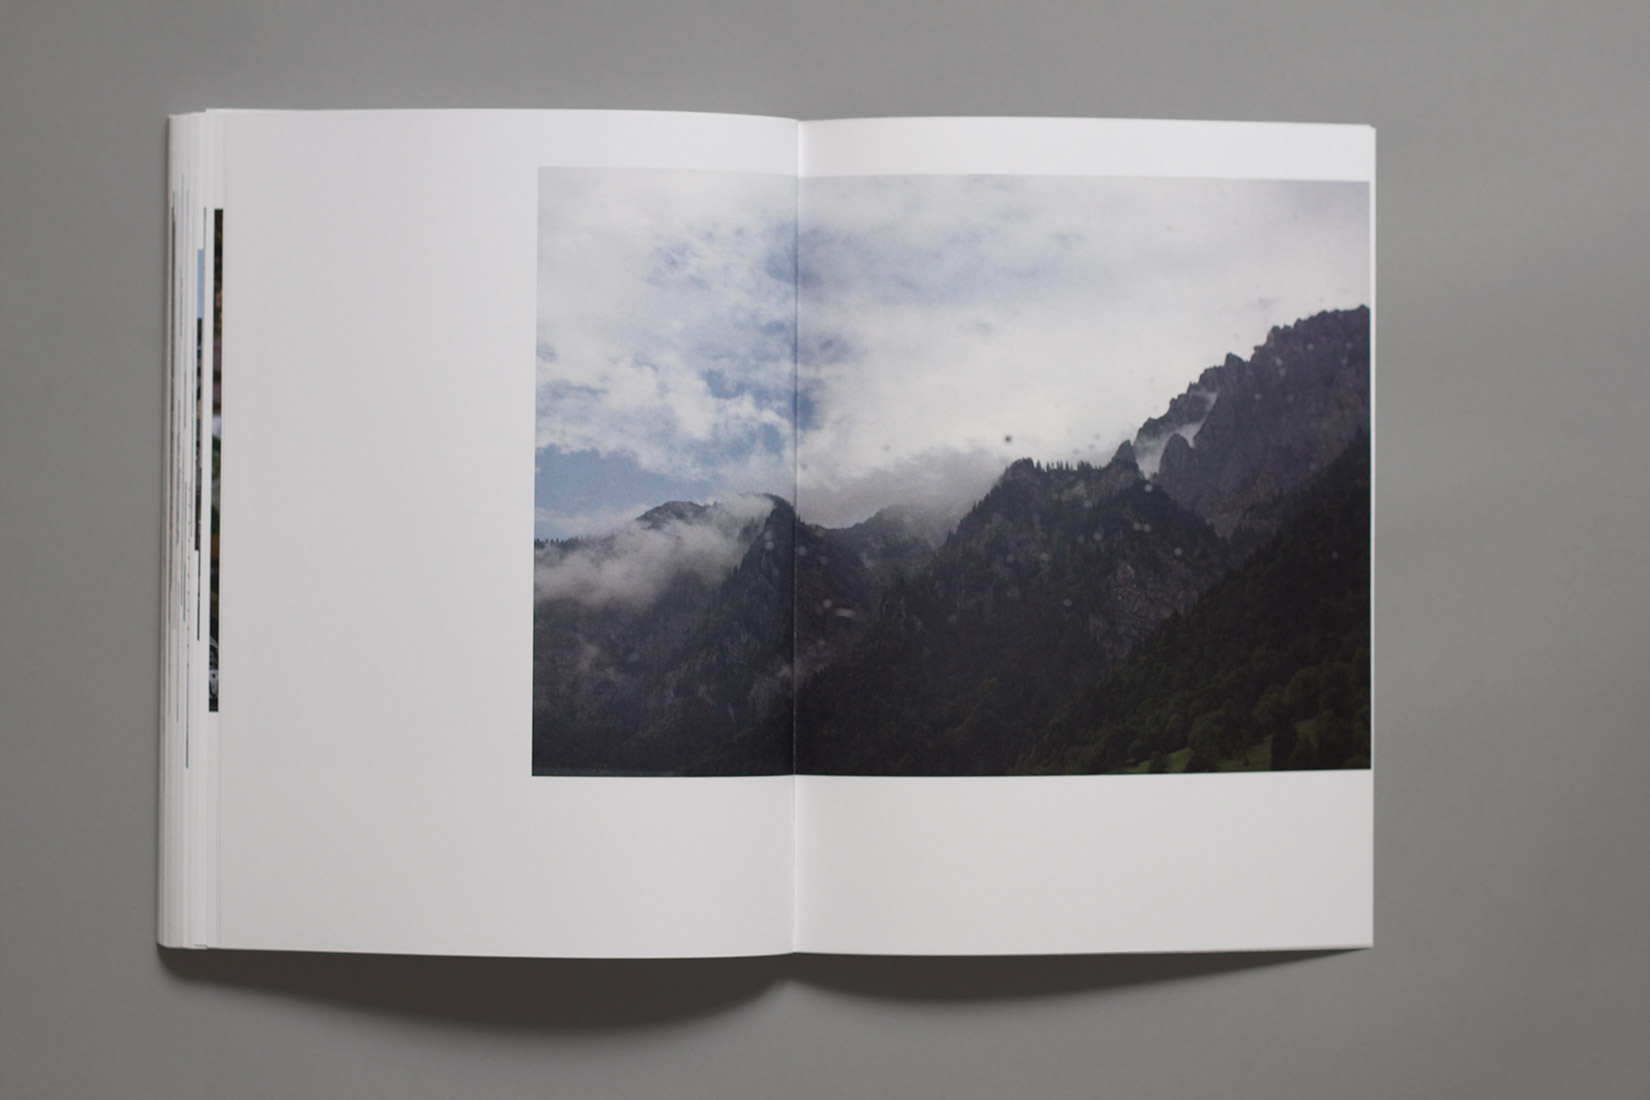 Voyage d'études, livre, Autriche, montagnes dans la brume